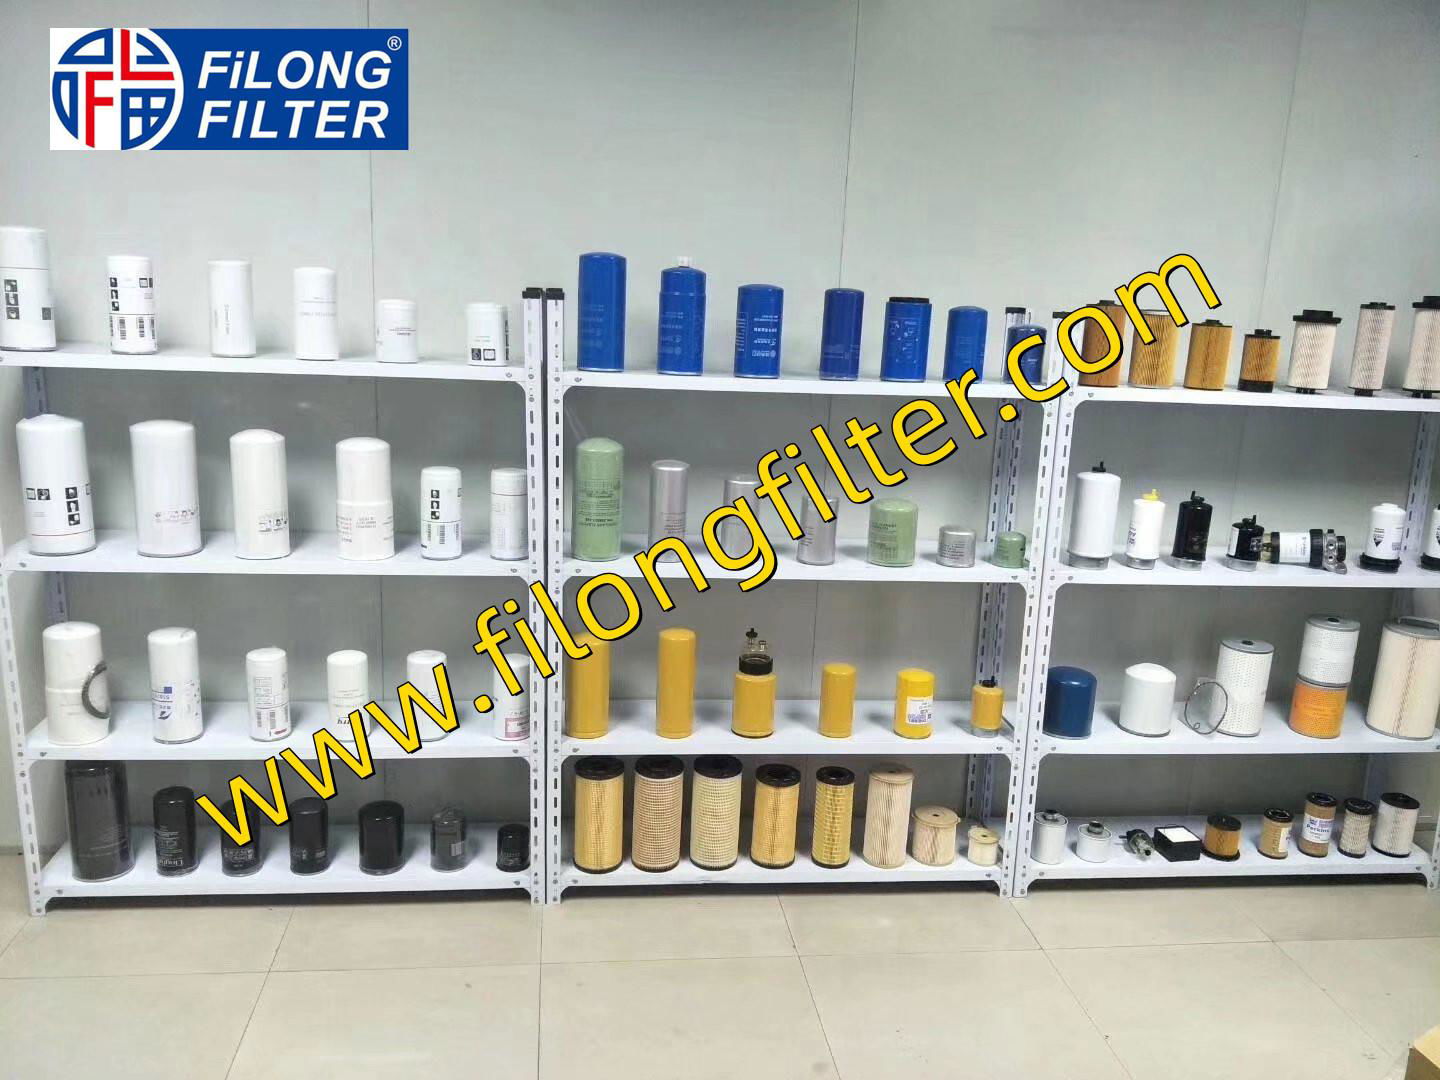 FILONG Fuel Filter Manufacturers , Fuel Filters manufactory in china,China Fuel Filter supplier,China Transmission Filter supplier,